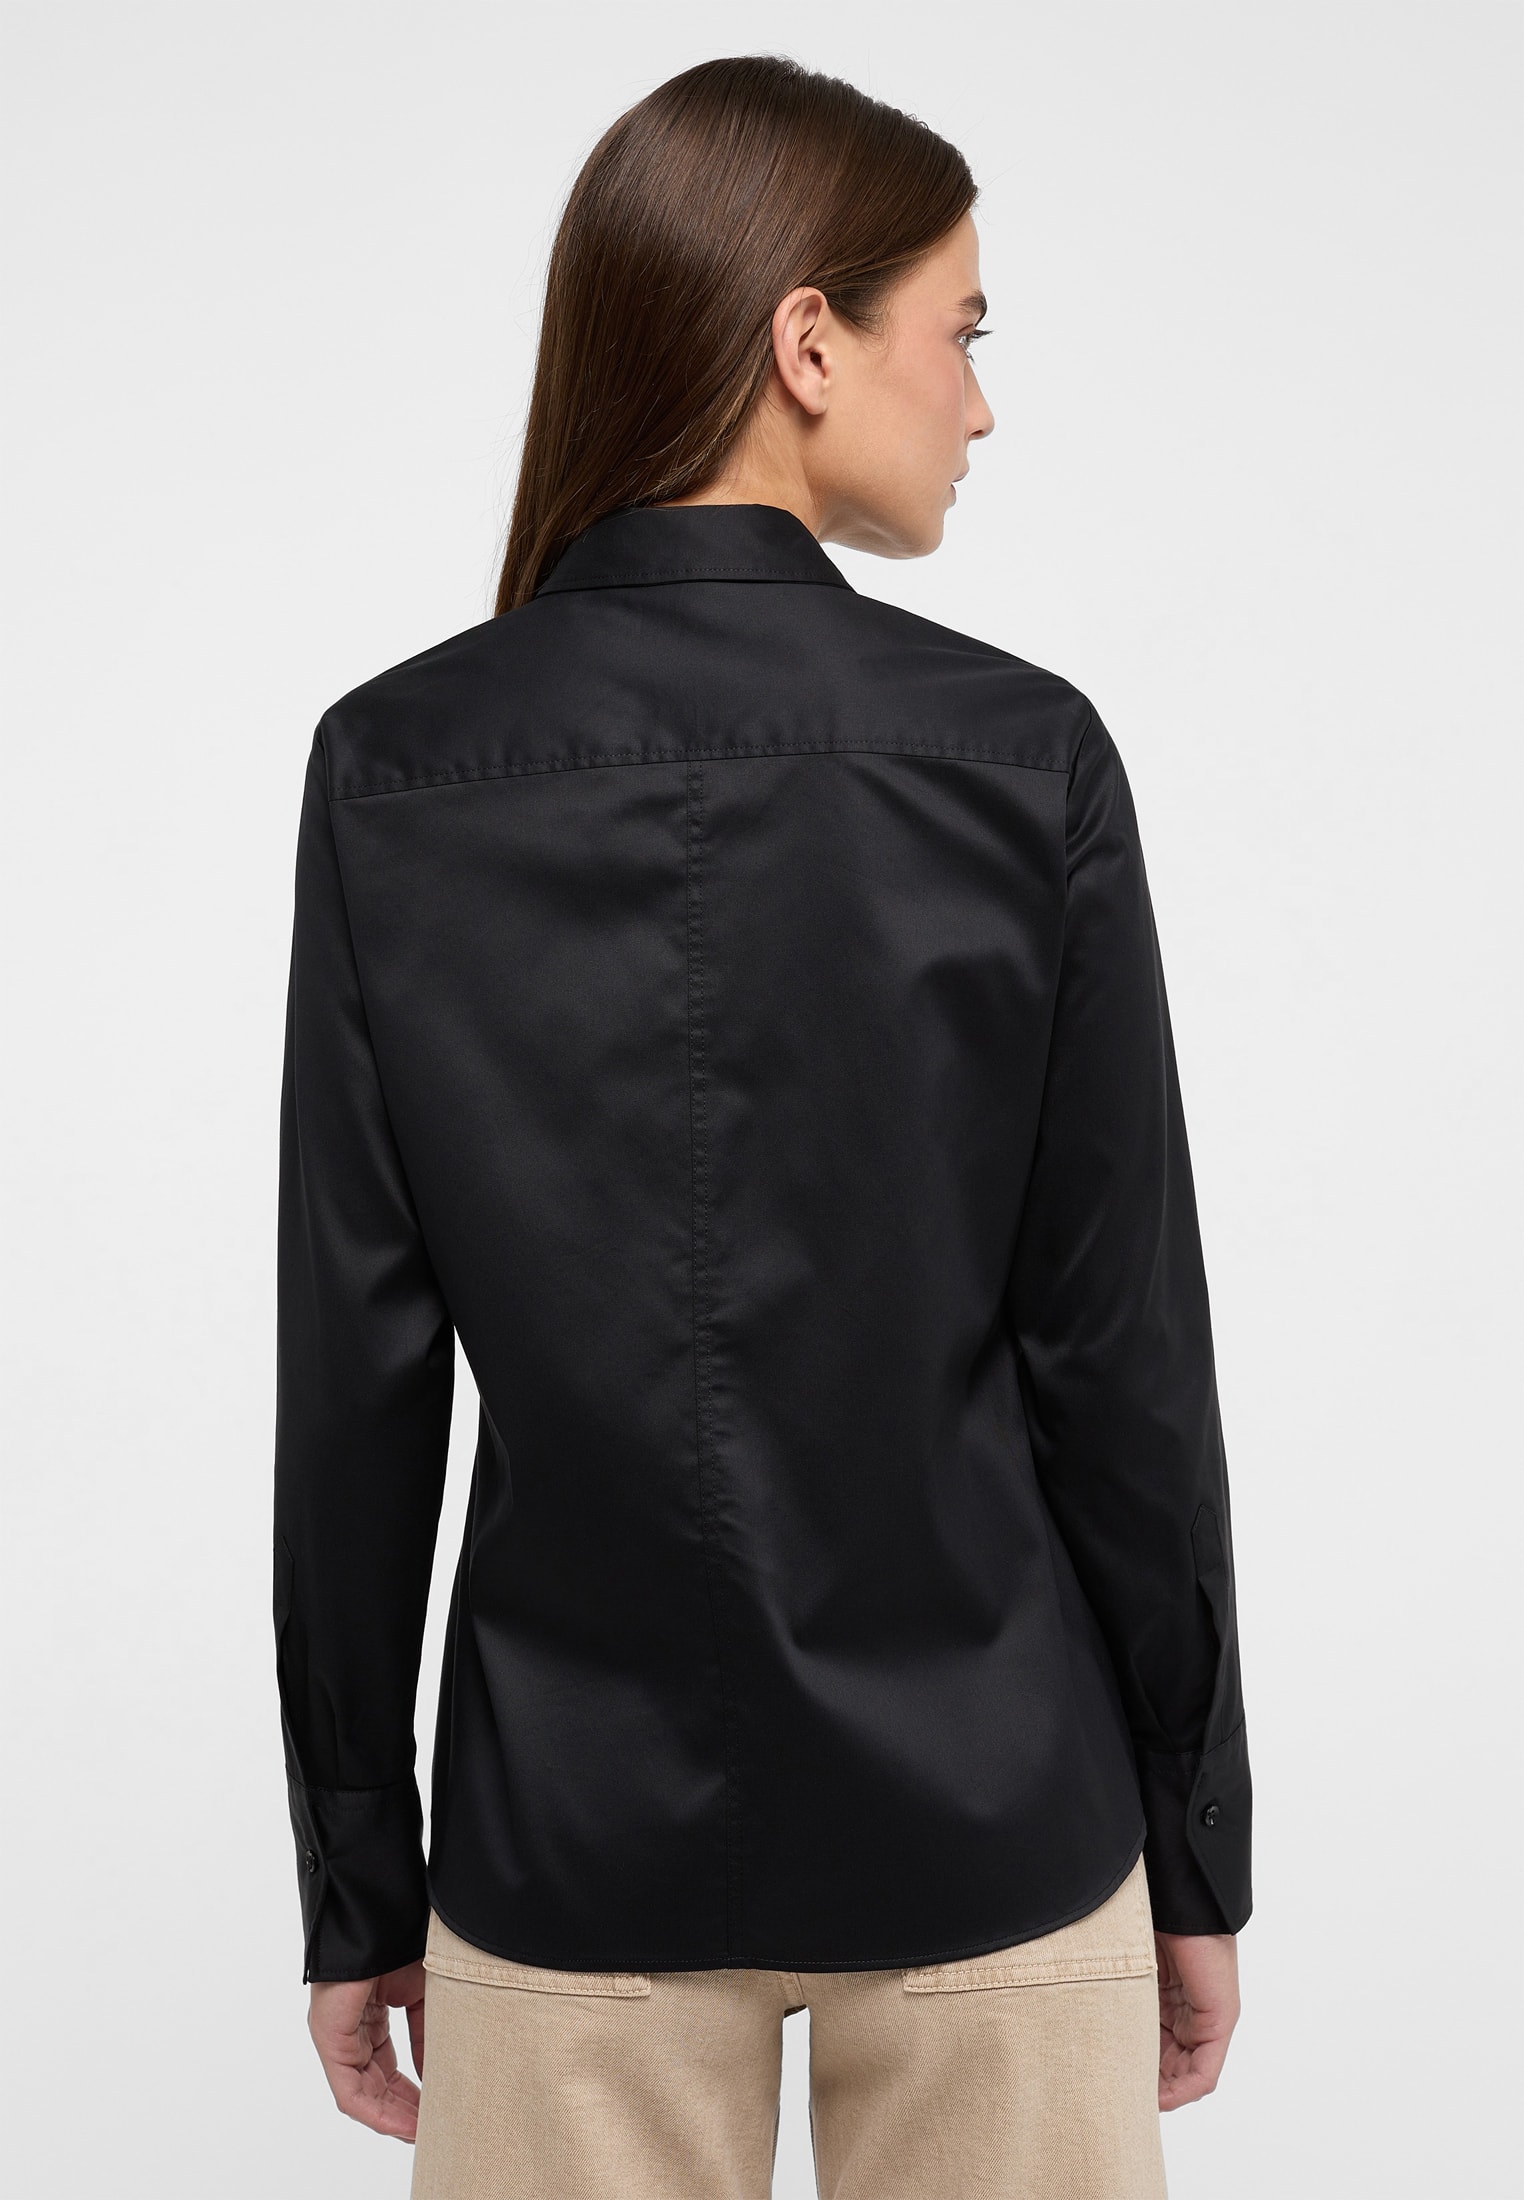 Cover Shirt Bluse in schwarz unifarben | schwarz | 48 | Langarm |  2BL00075-03-91-48-1/1